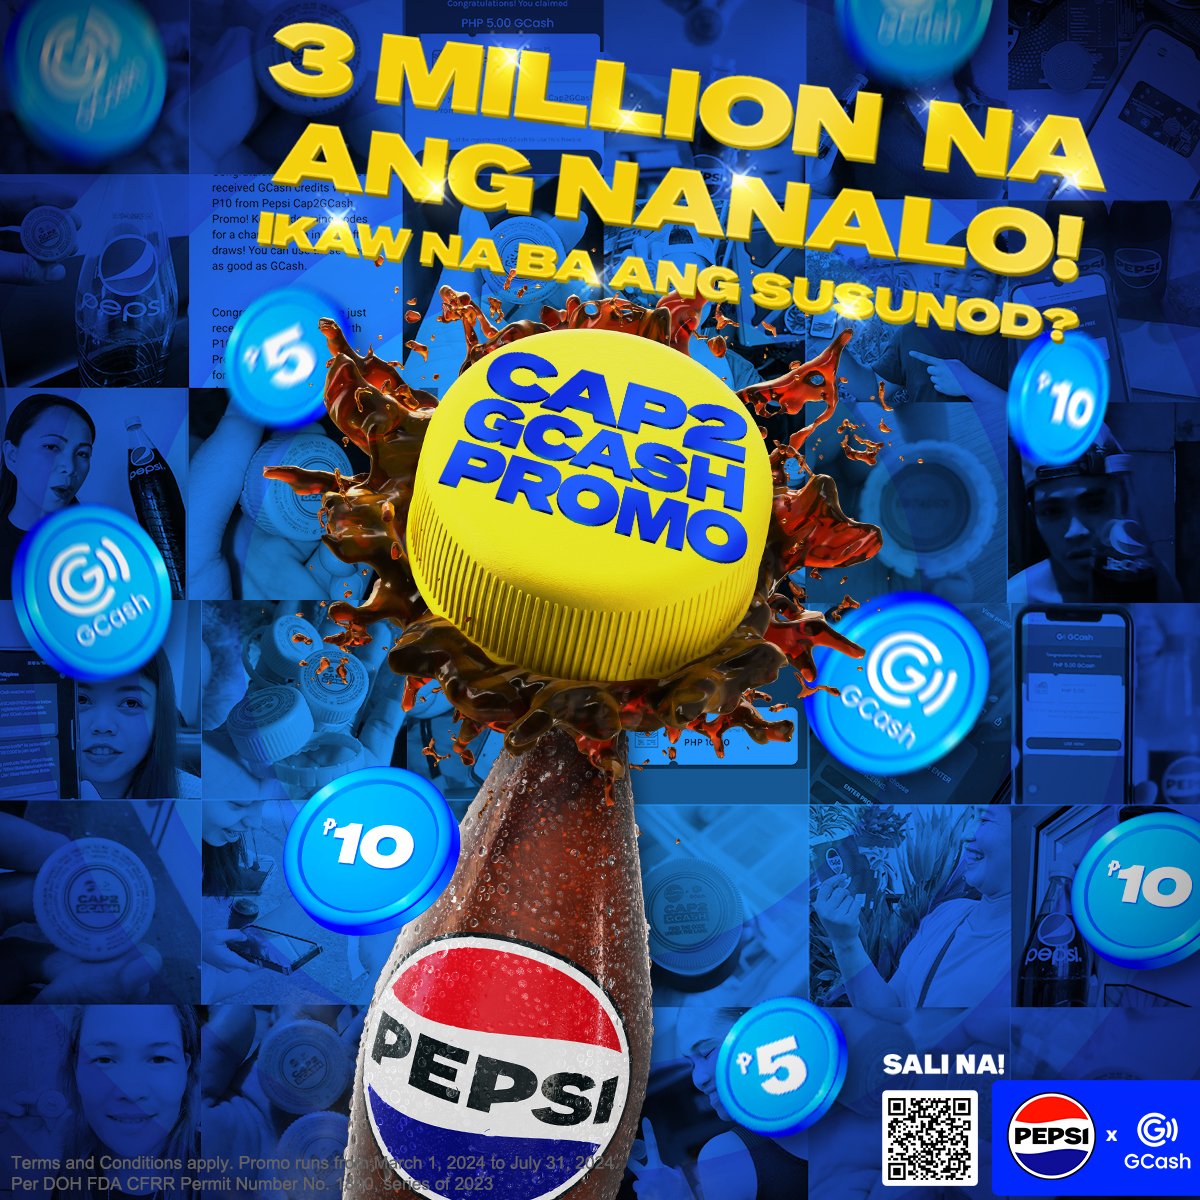 Over 3 million entries na ang nanalo! 💰🎉 Marami pa ang pwedeng maiuwing papremyo kaya bili na ng Pepsi at sali na sa #PepsiCap2GCashPromo for a chance to win instant GCash prizes daily, monthly, at up to 1 Million pesos sa grand draw!